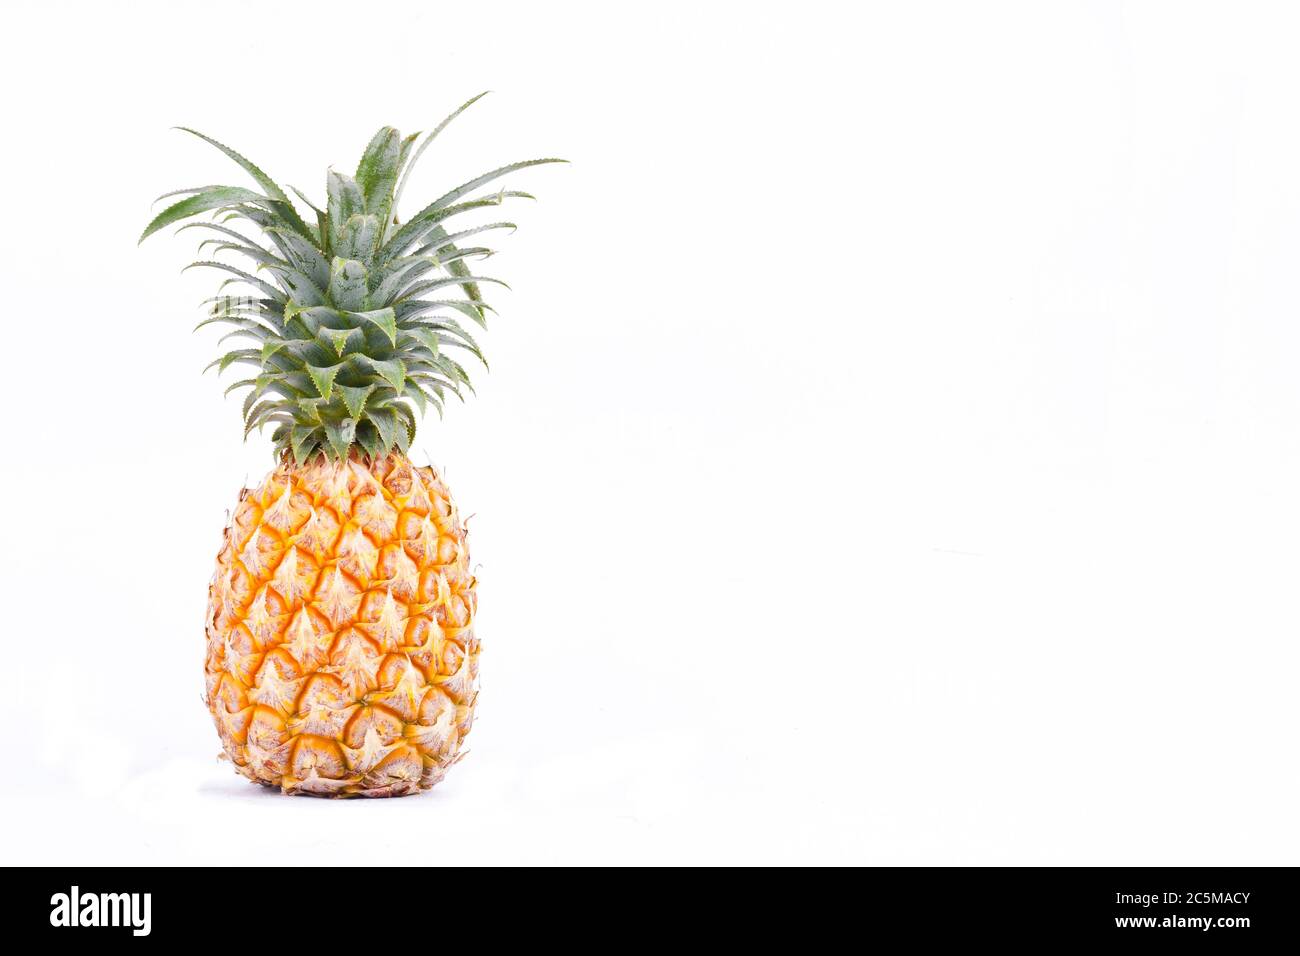 l'ananas mûr est un fruit tropical sur fond blanc. la nourriture saine aux fruits de l'ananas est isolée Banque D'Images